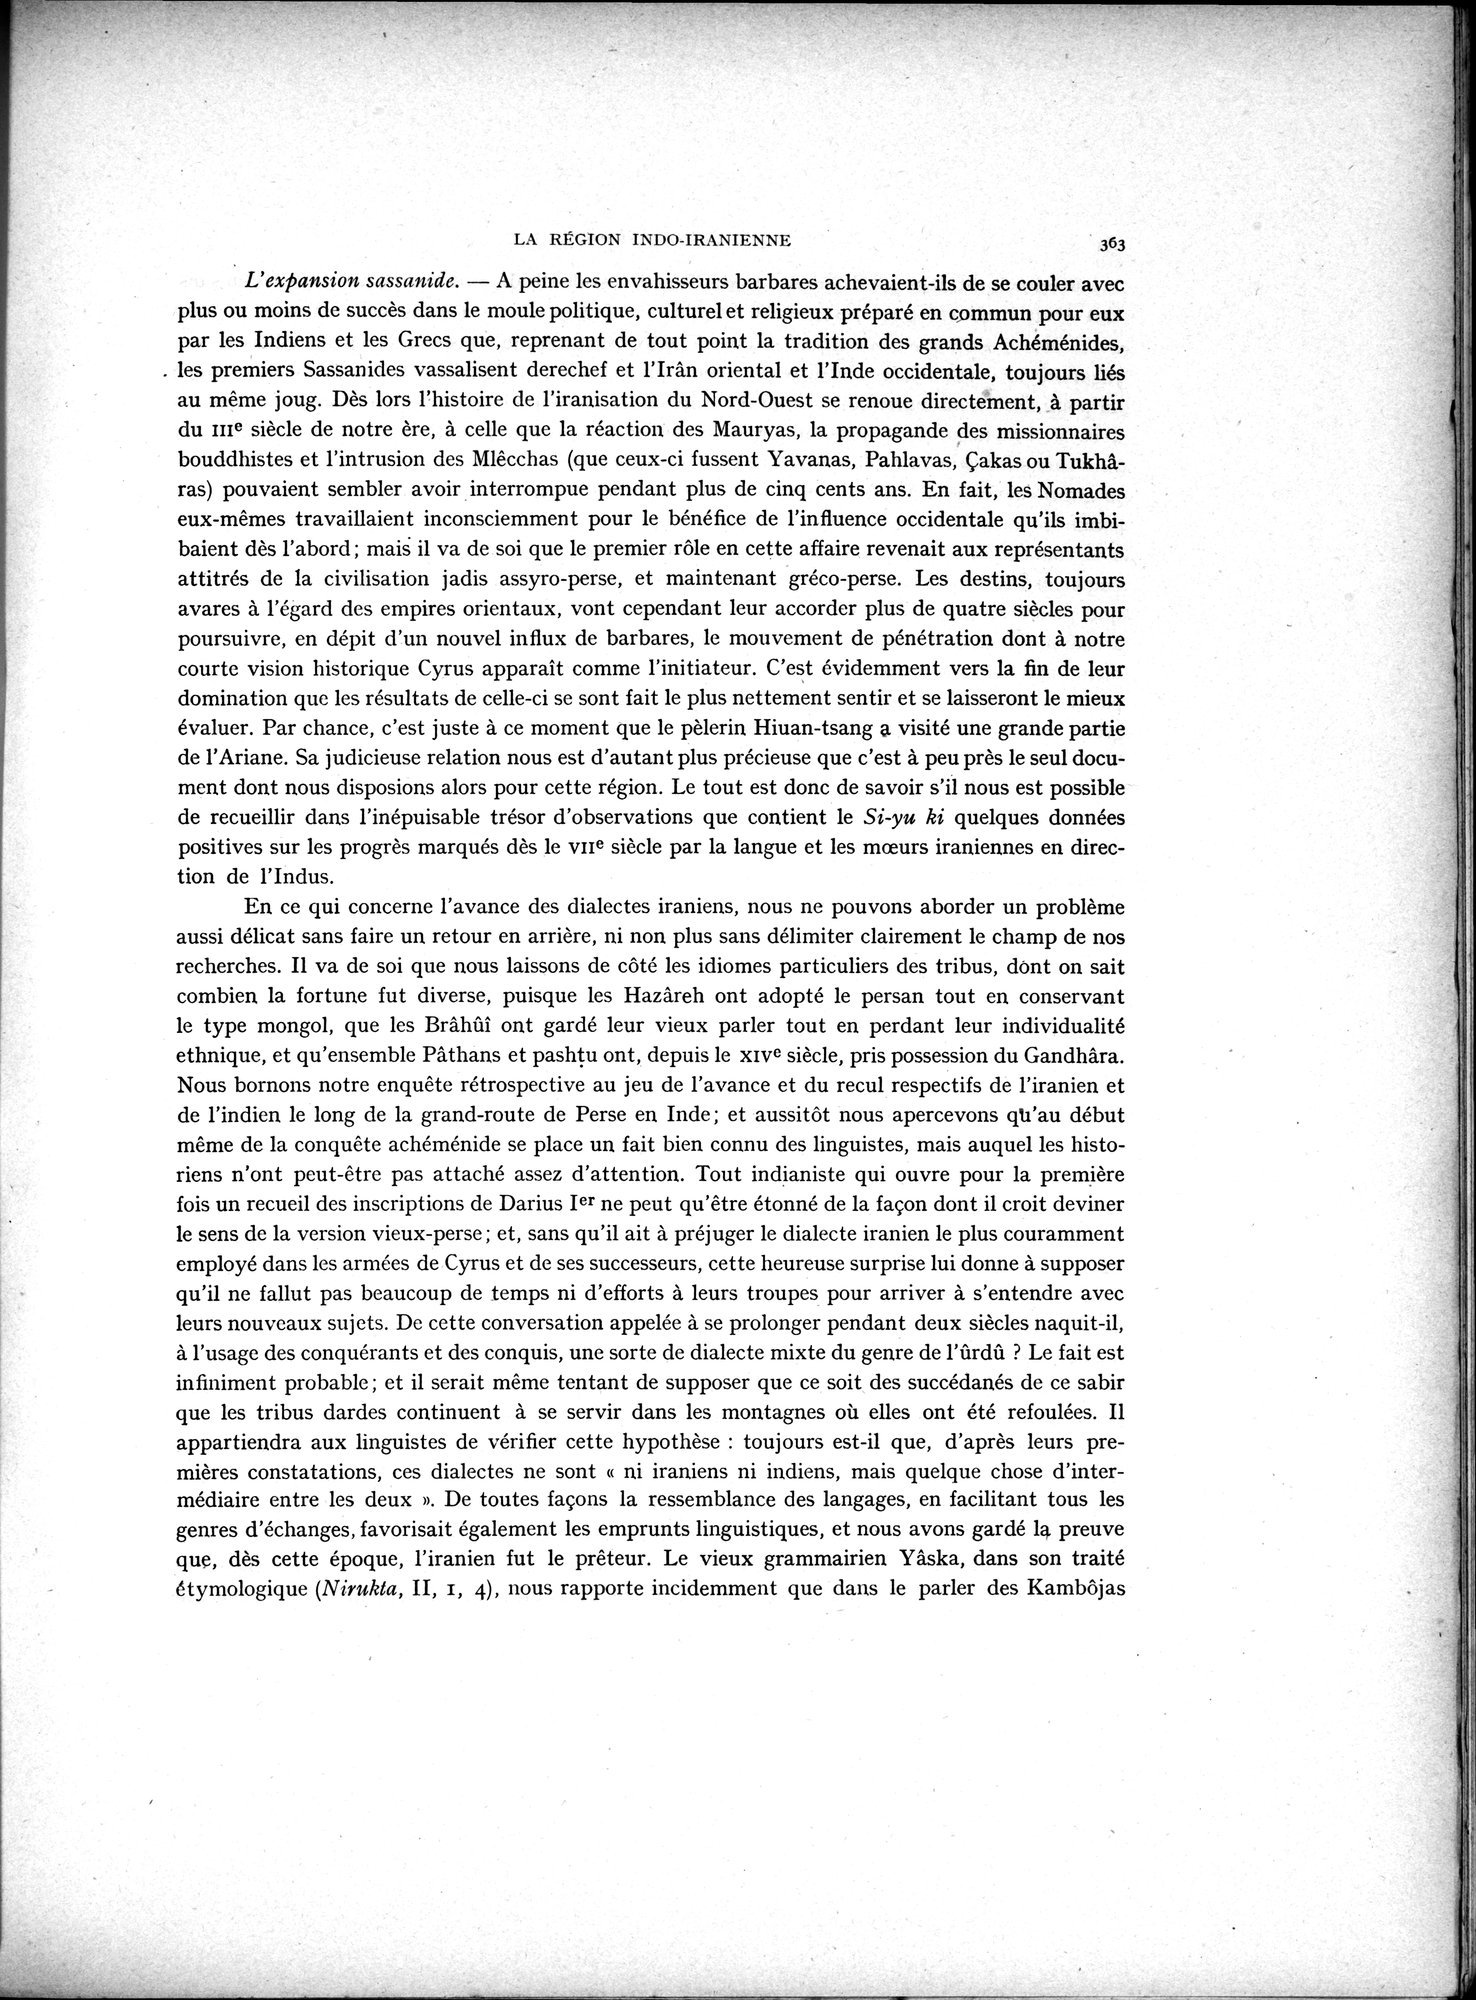 La Vieille Route de l'Inde de Bactres à Taxila : vol.2 / Page 197 (Grayscale High Resolution Image)